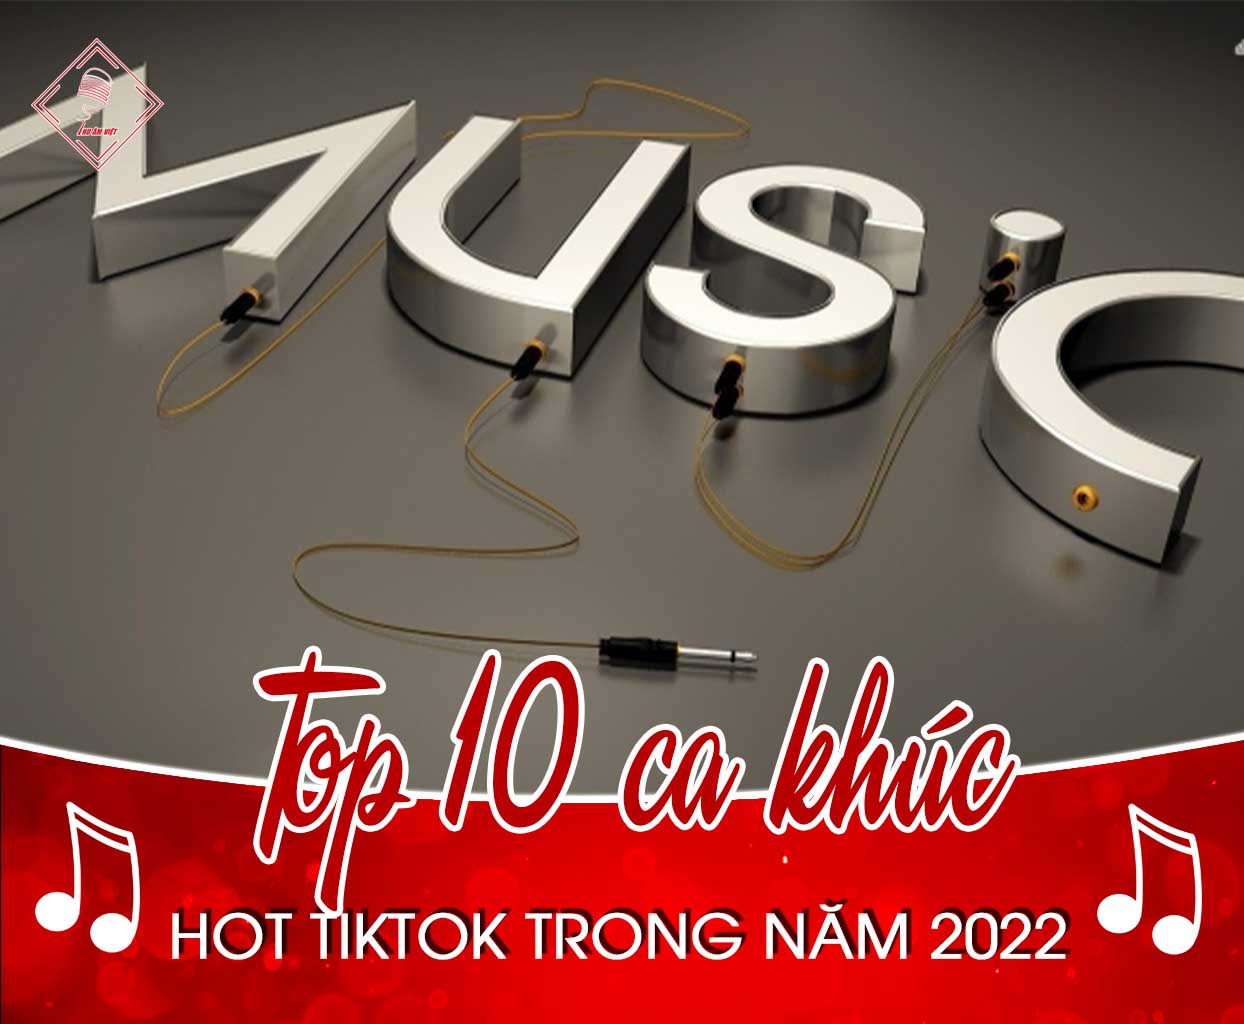 Top 10 ca khúc nhạc hot tiktok trong năm 2022